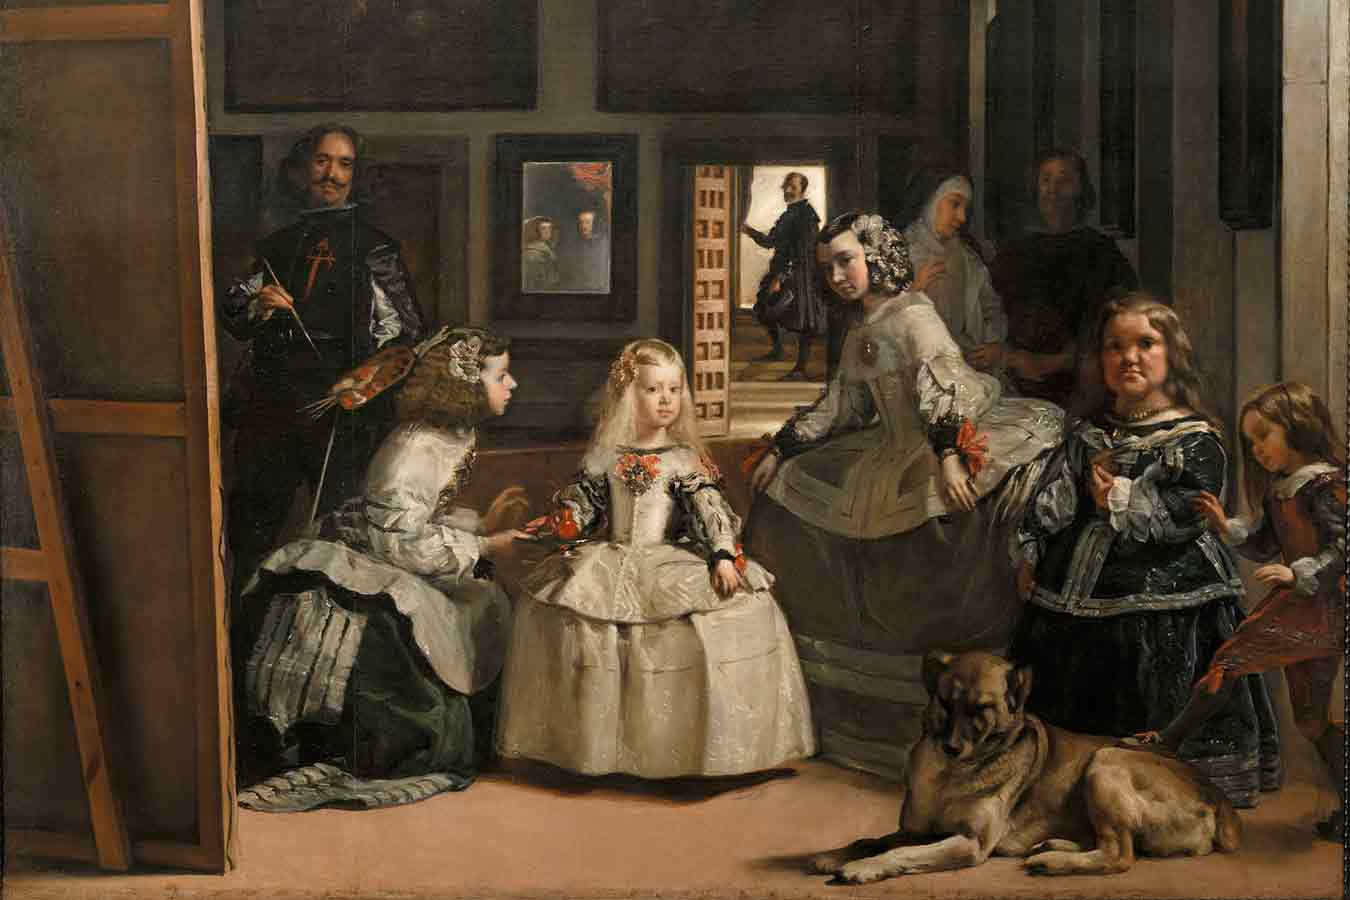 Las meninas af Diego Velázquez. Vi ser datteren til Filip IV og hendes tjenestepiger